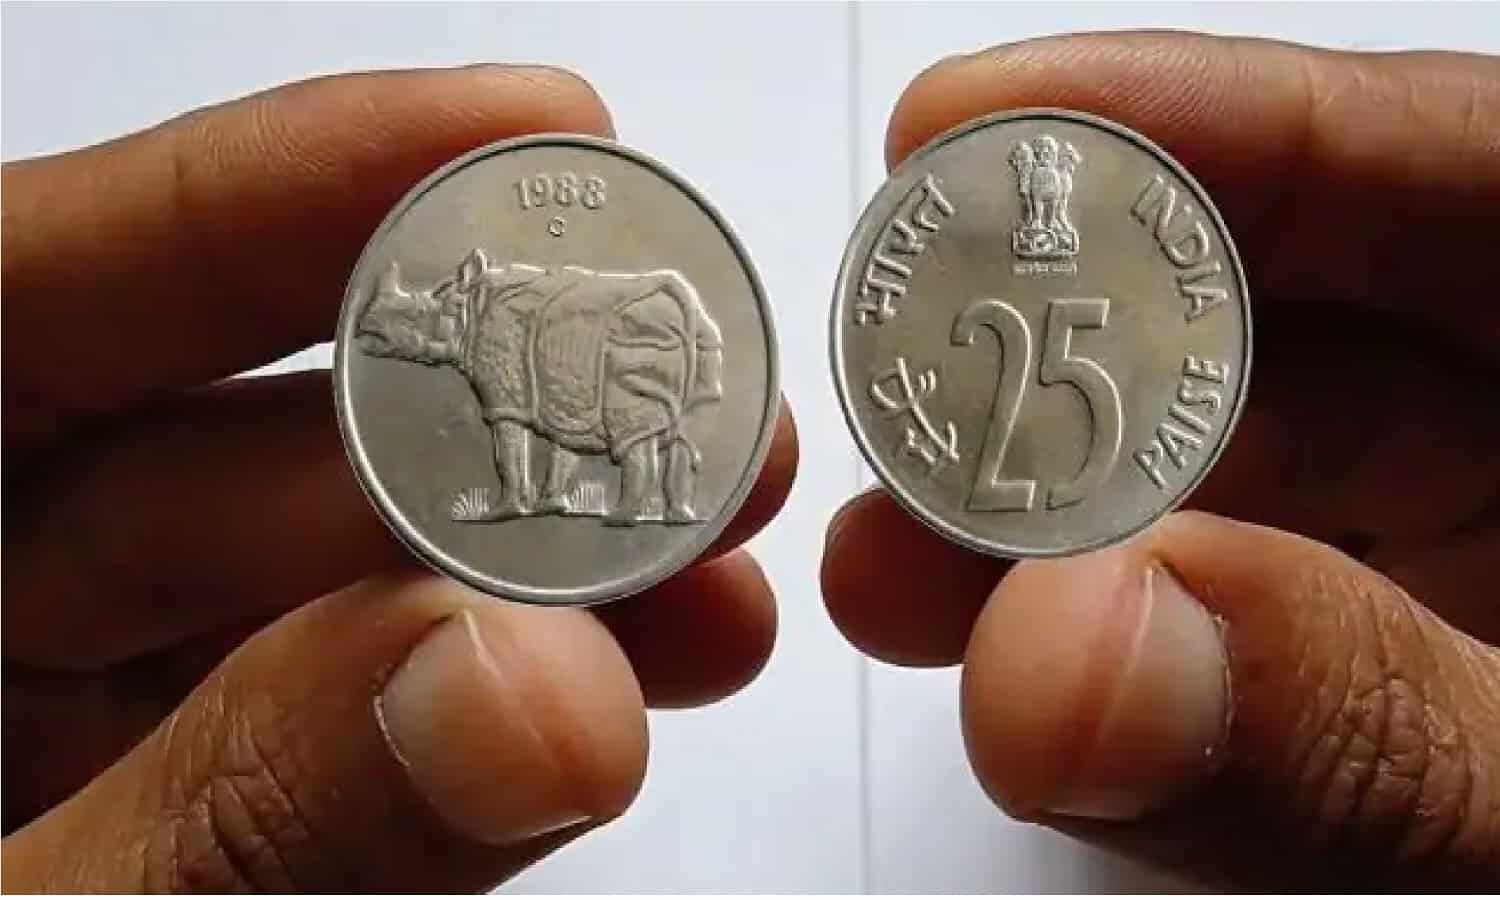 Crorepati 25 Paise Coin: 1988 में बना गैंडे वाला 25 पैसे का सिक्का आपको बना  देगा करोड़पति, घर में होगी पैसो की बारिश | Crorepati 25 Paise Coin: 25 paise  coin with rhinoceros made in 1988 will make you a millionaire, money will  rain in the house